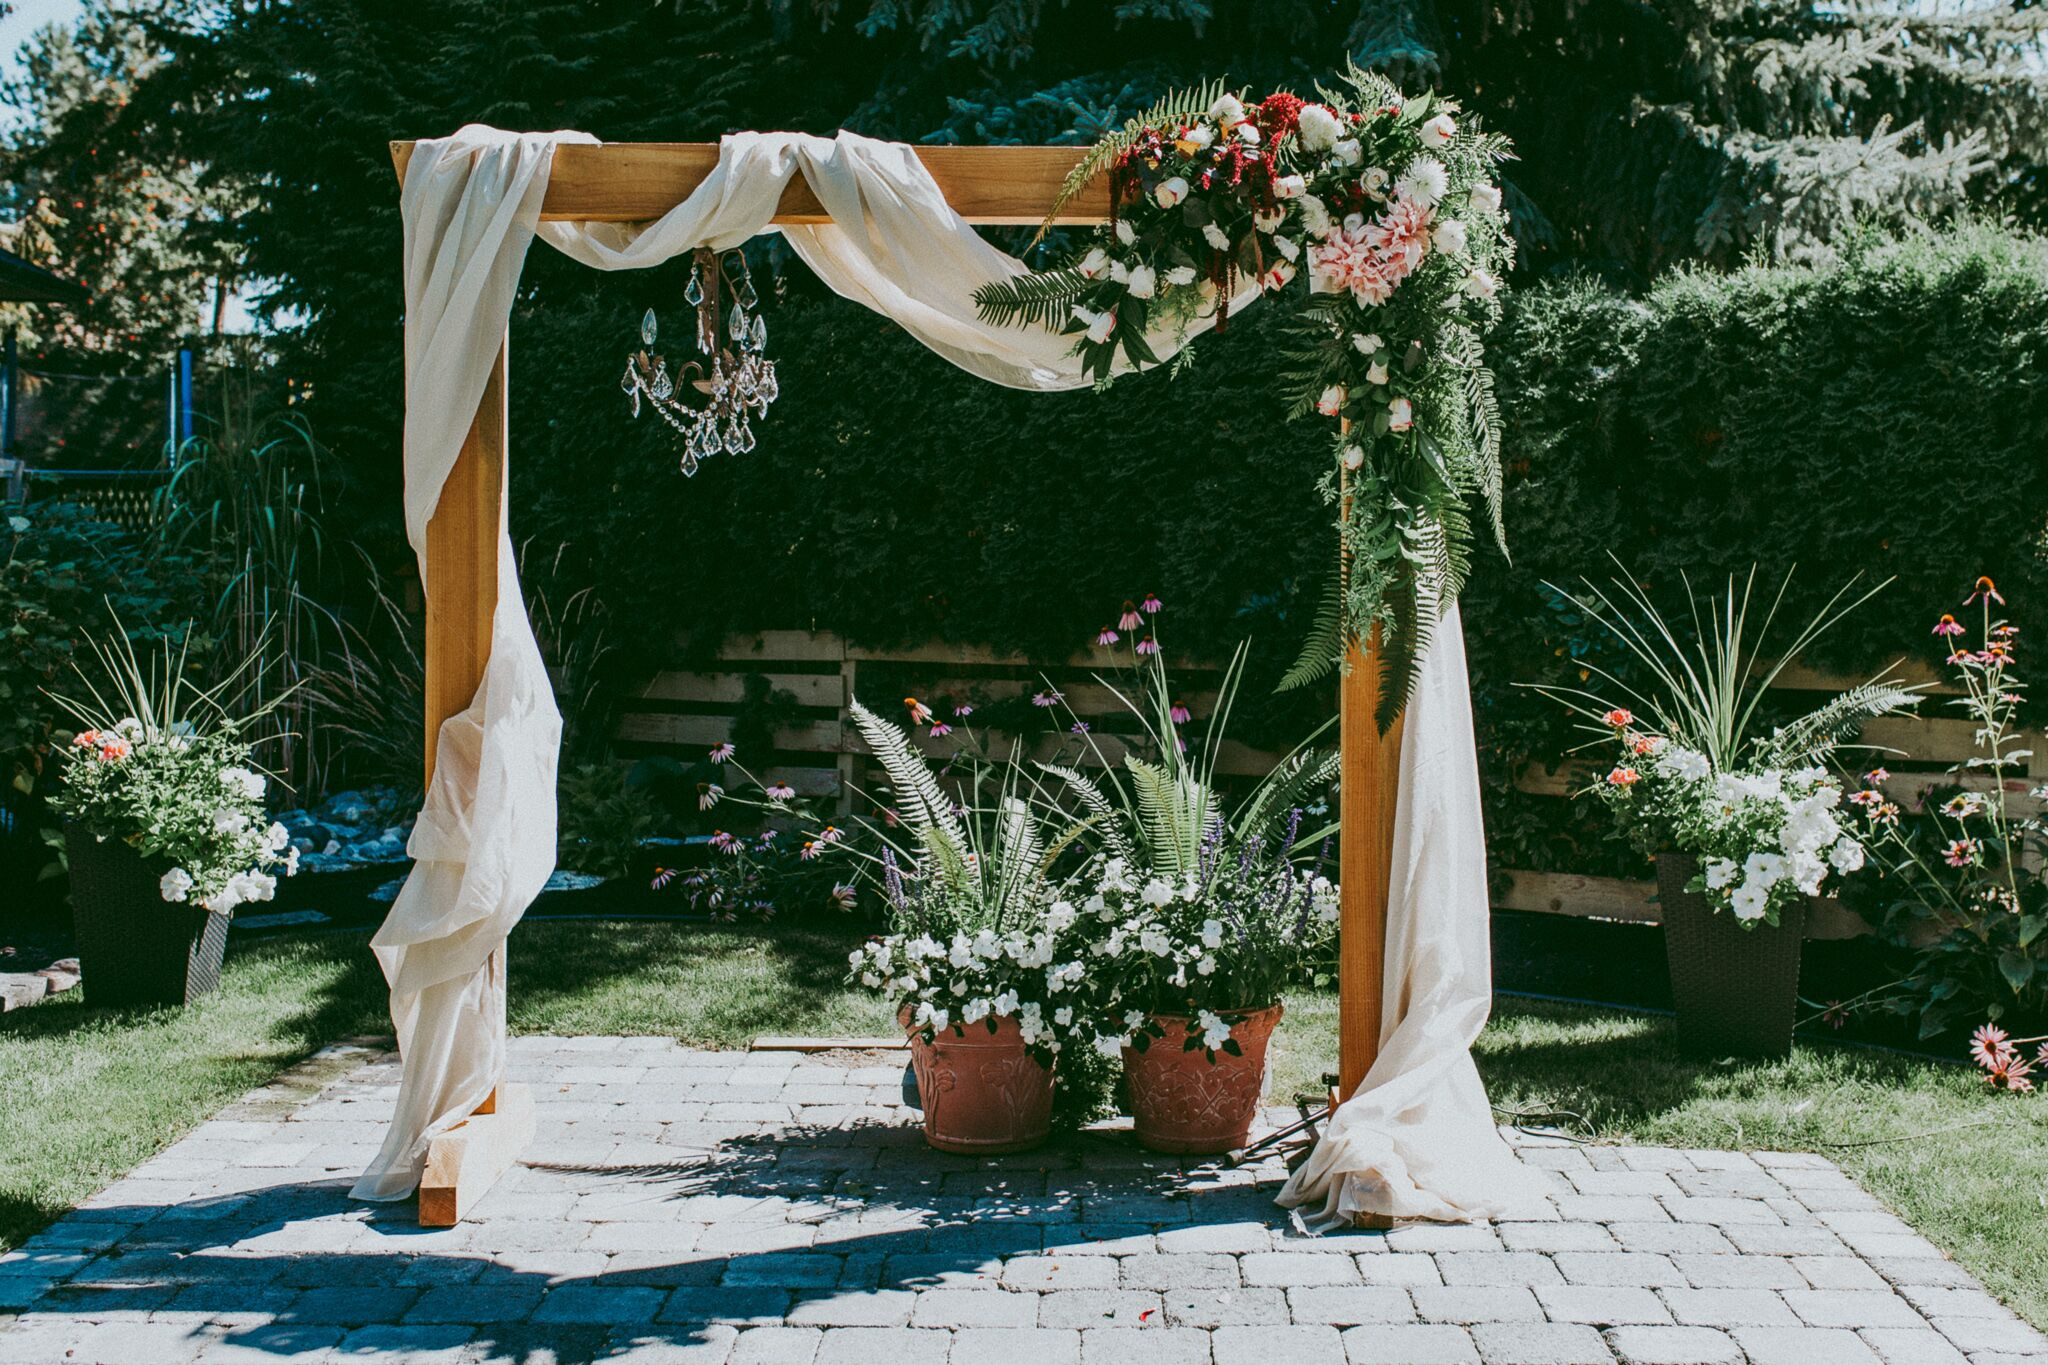 DIY Archway For Wedding
 DIY Wooden Wedding Arch With Flower Garland